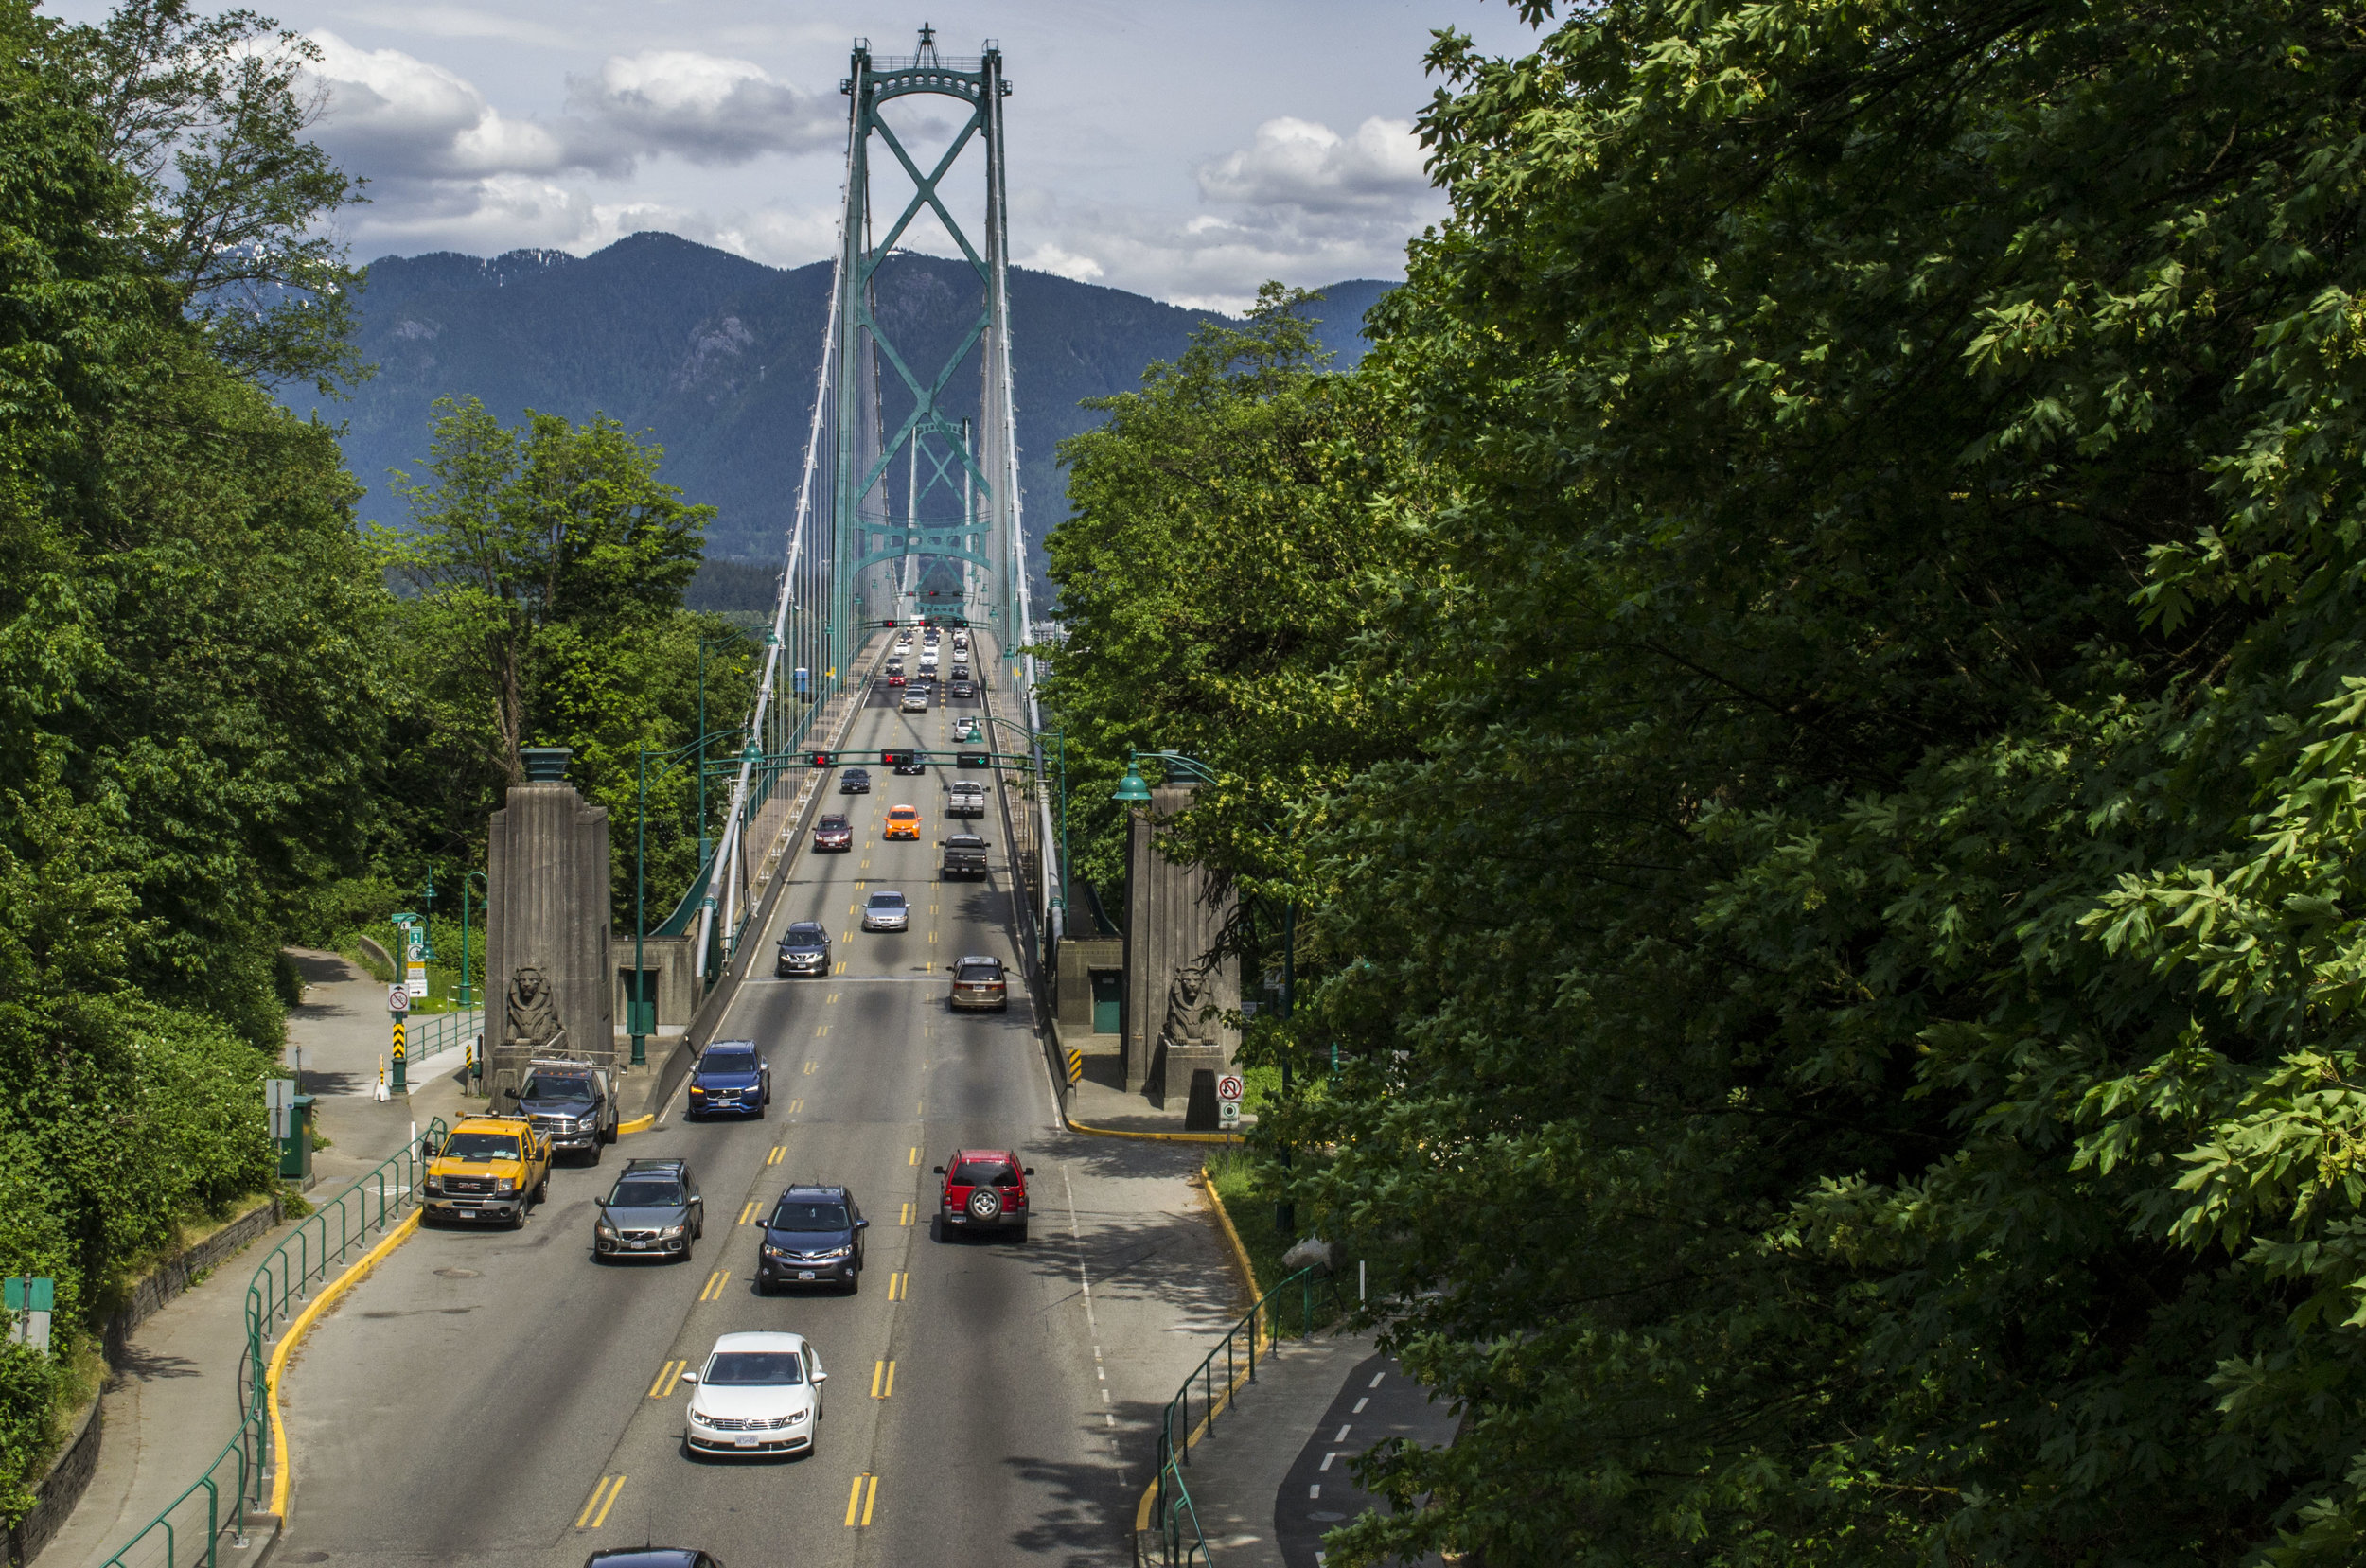 Lions gate bridge during a Vancouver bike adventure